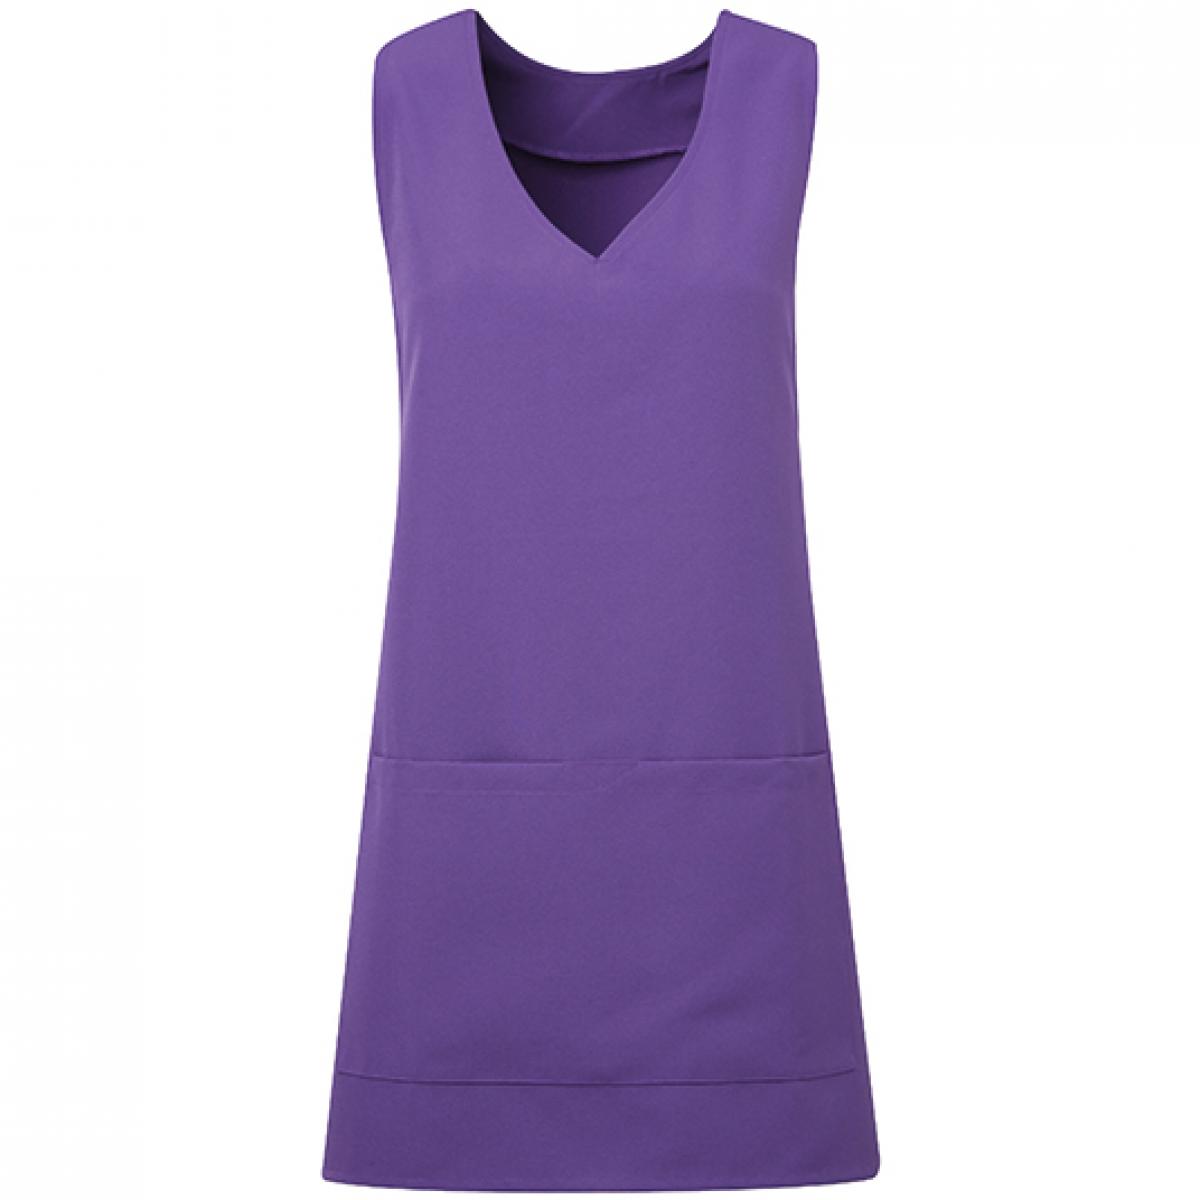 Hersteller: Premier Workwear Herstellernummer: PR177 Artikelbezeichnung: Tunika-Schürze Tulip Wrap Around Tunic, 83 cm lang Farbe: Purple (ca. Pantone 7447C)